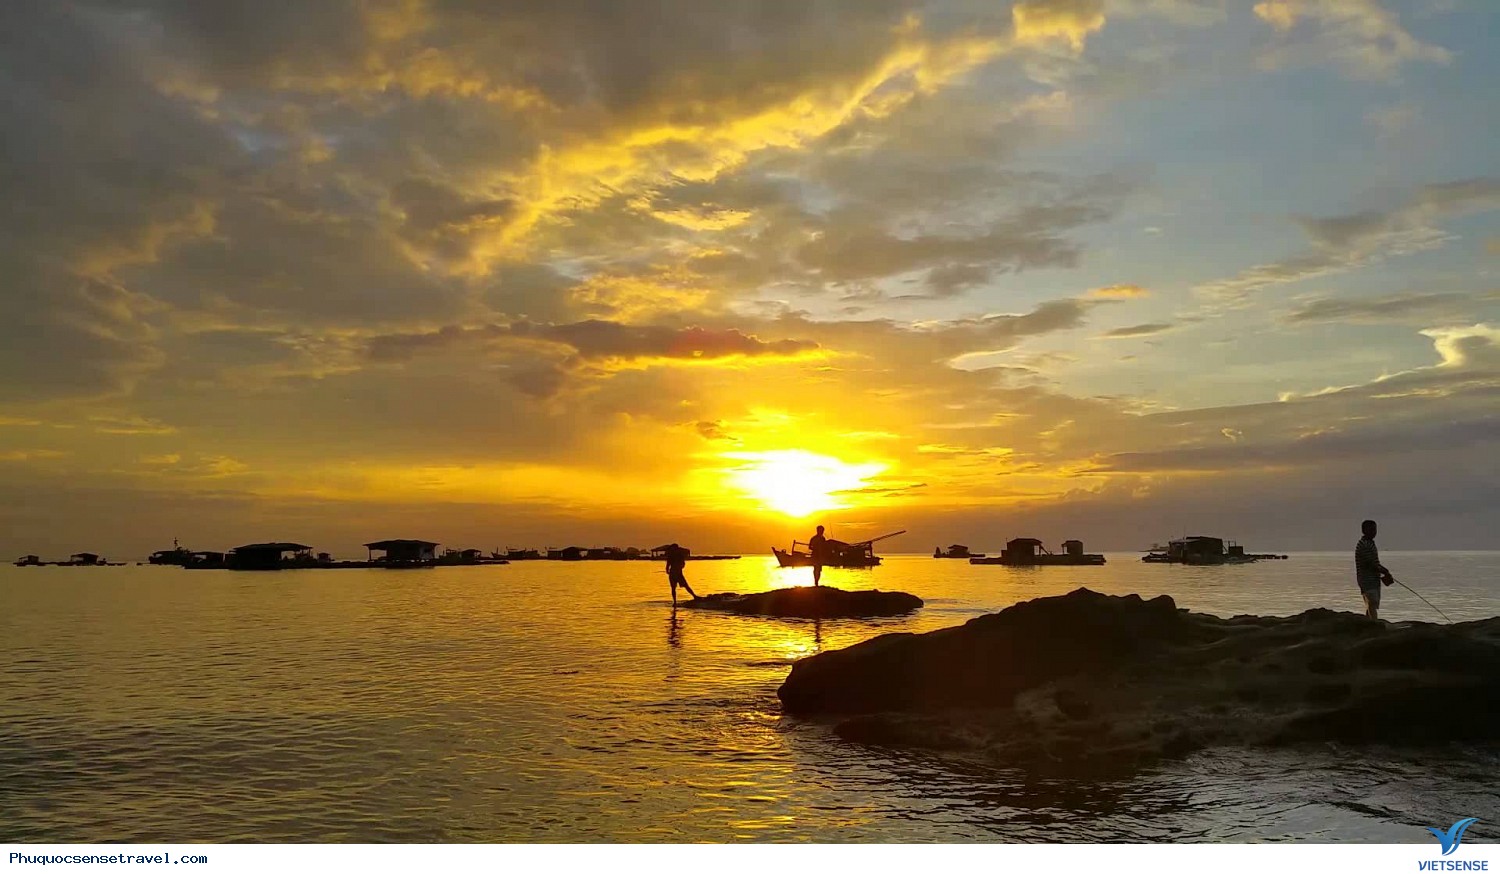 Phú Quốc: Đảo ngọc xinh đẹp với bãi biển trải dài, nắm giữ trong mình những bí mật động trời của thiên nhiên. Hình ảnh liên quan đến khóa từ Phú Quốc sẽ đưa bạn đến với không gian cảnh quan tuyệt đẹp, nơi mà đất trời xen kẽ nhau, tạo nên một cuộc sống vô cùng đặc biệt.